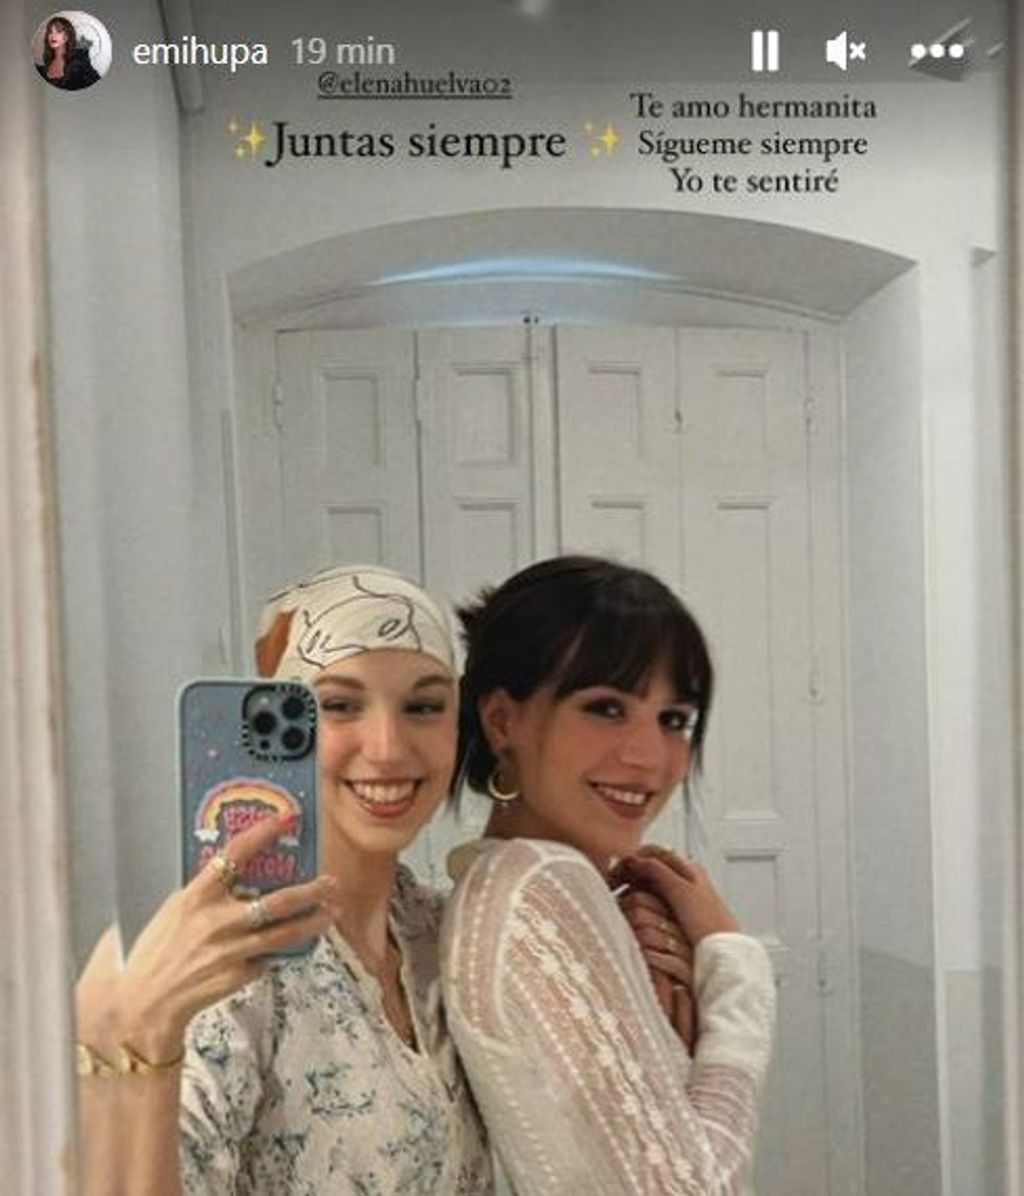 La hermana de Elena Huelva se despide de la influencer: "Sígueme siempre. Yo te sentiré"